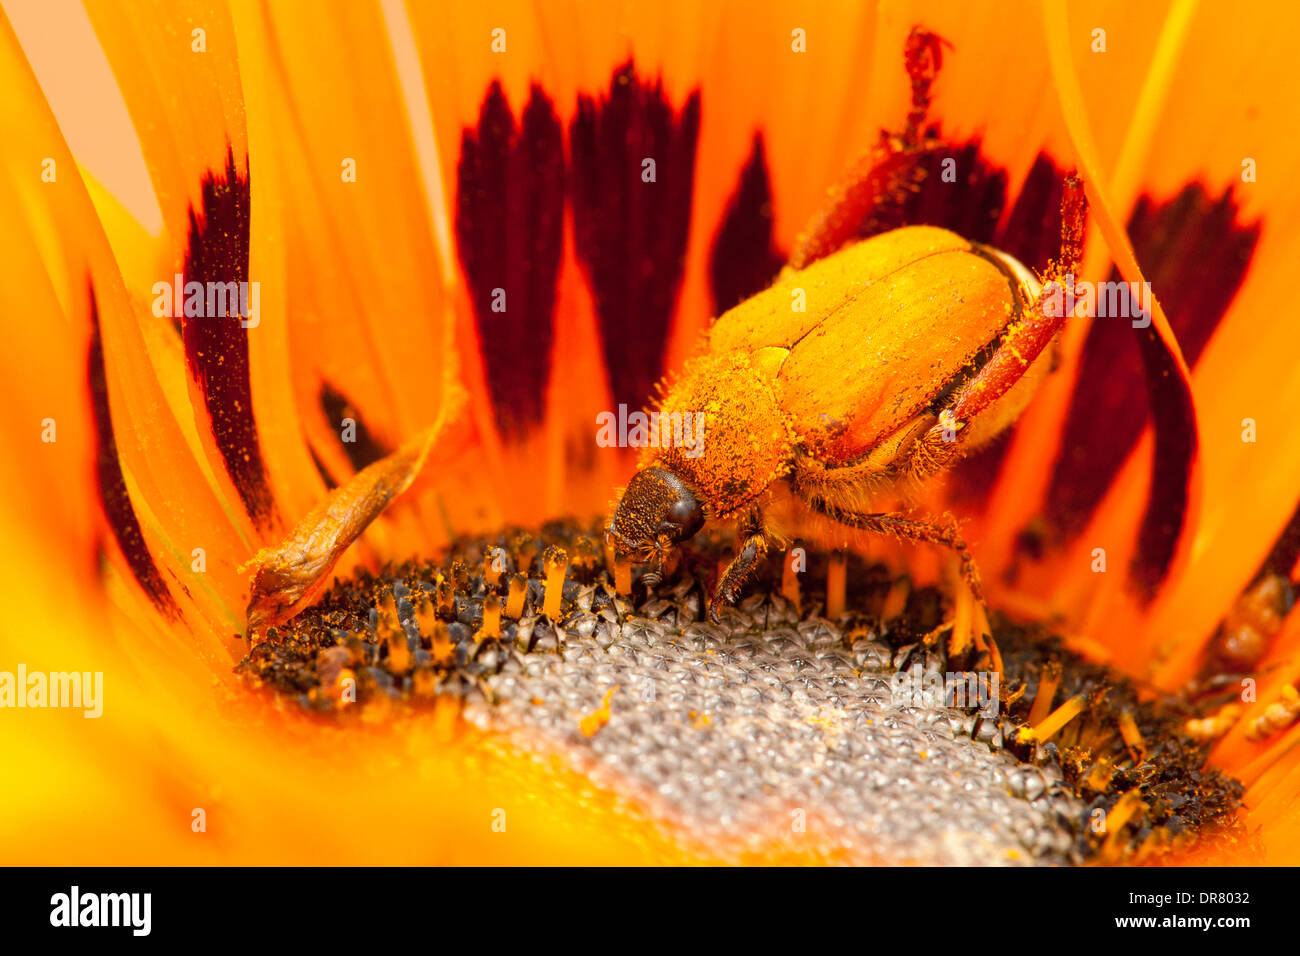 Coléoptère de couleur orange sur une orange Gazania fleur, le Namaqualand, Afrique du Sud Banque D'Images